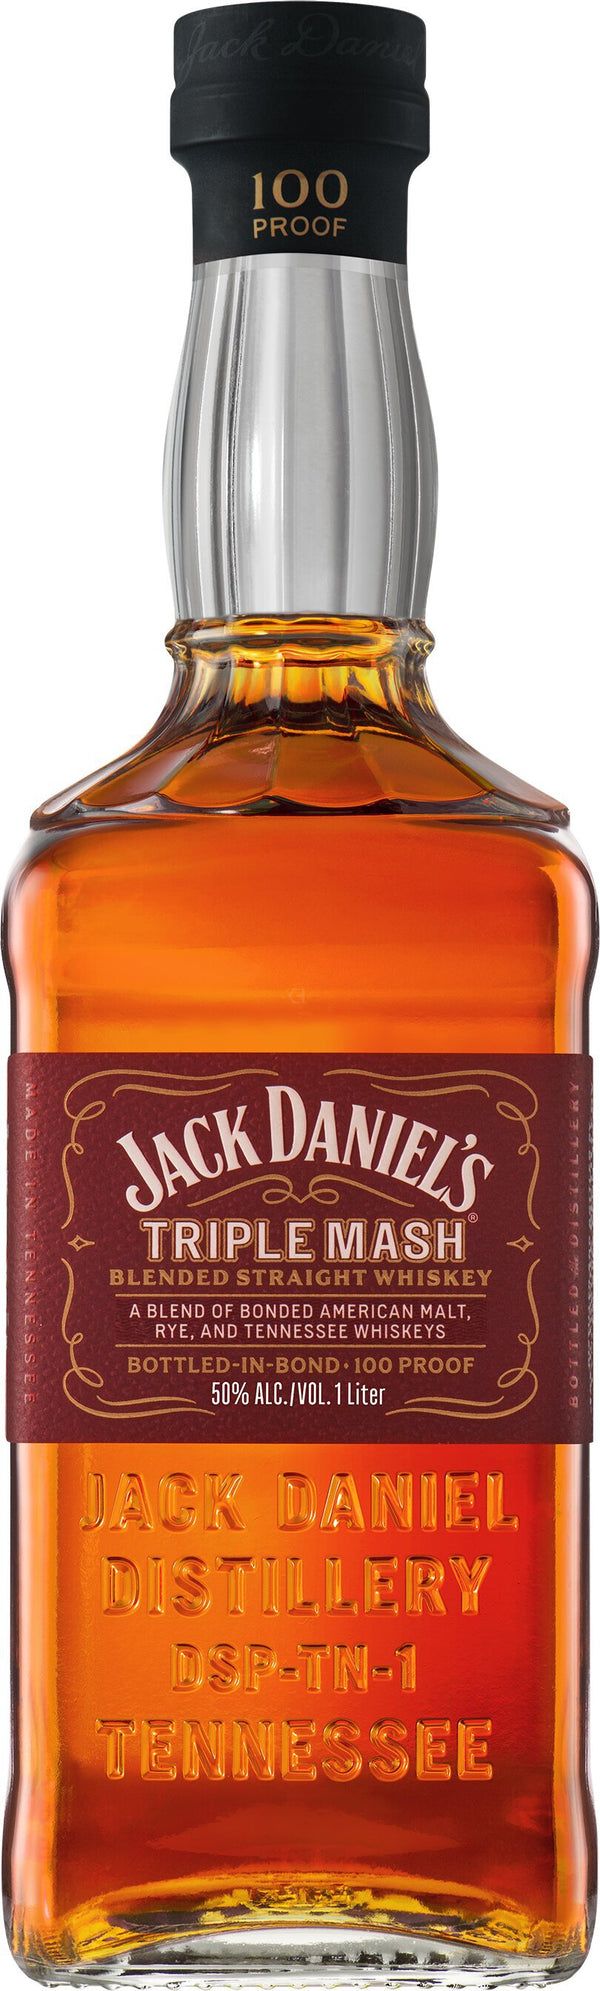 Jack Daniel's 1938 Triple Mash Blended Whiskey 700ml